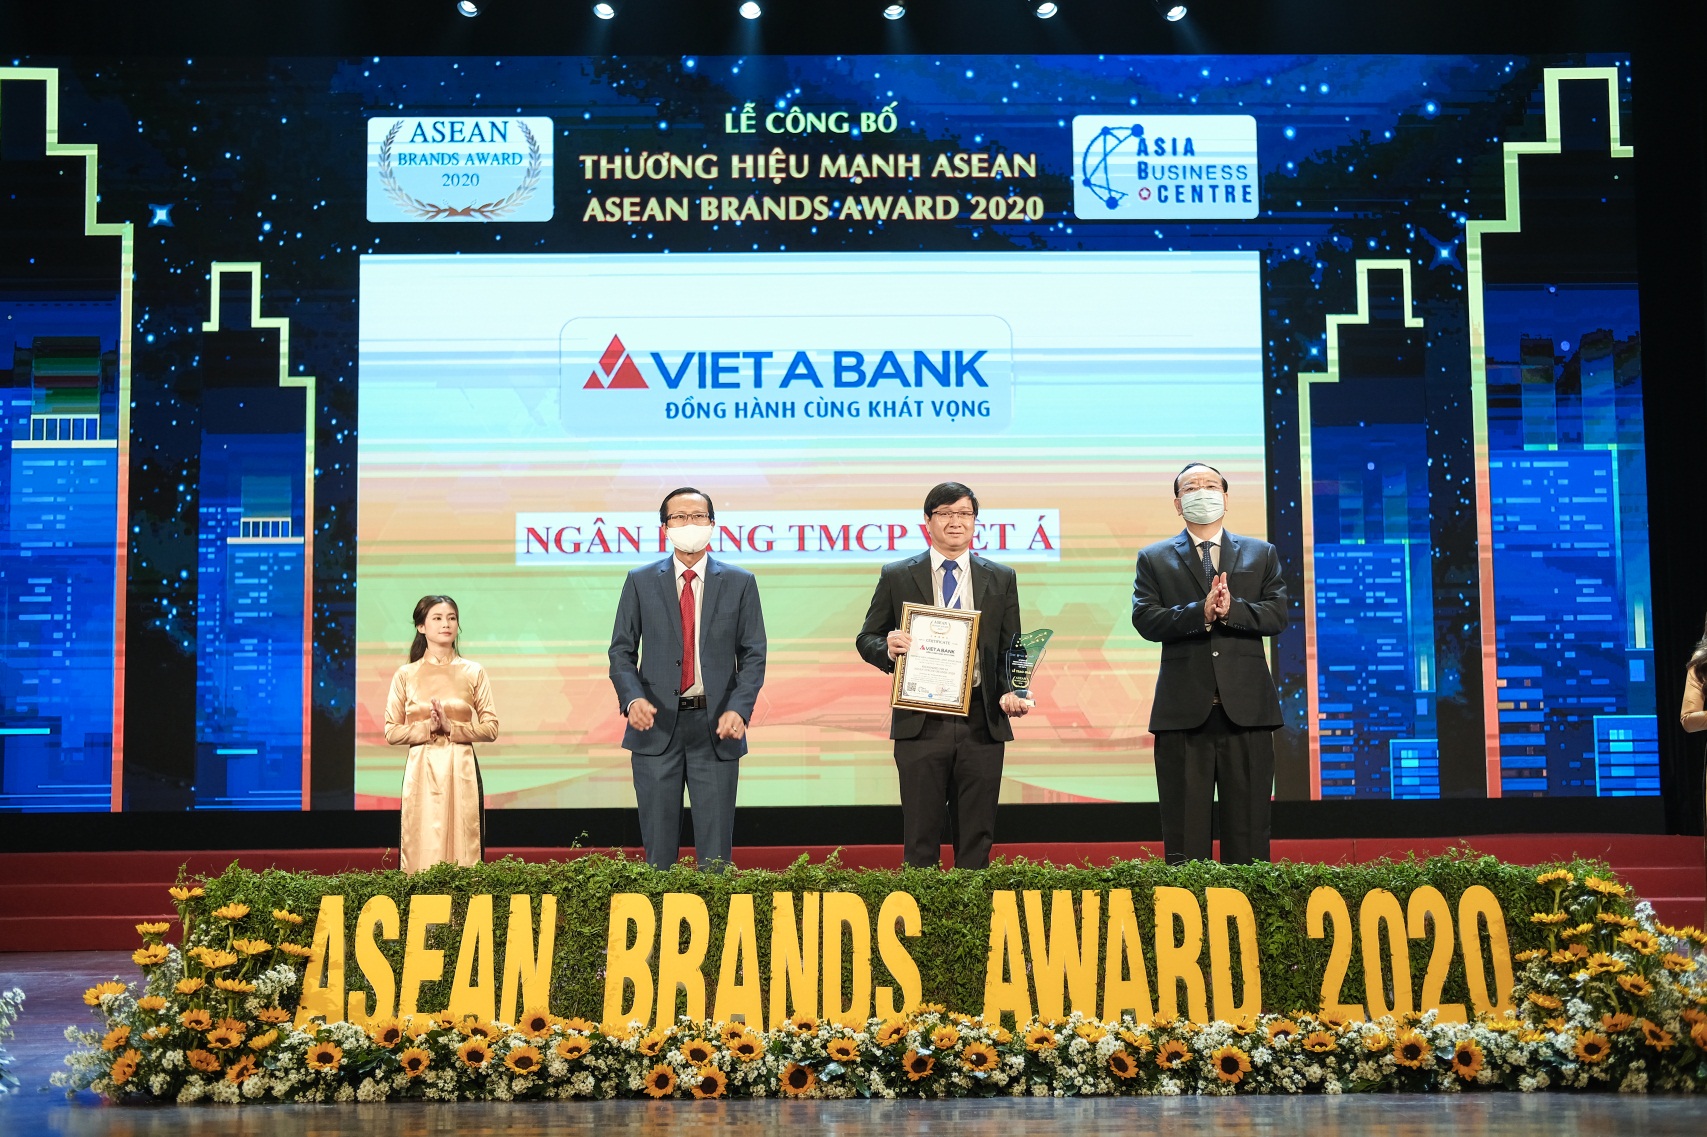 VietABank bổ sung nhân sự và nhận giải thưởng Thương hiệu mạnh ASEAN